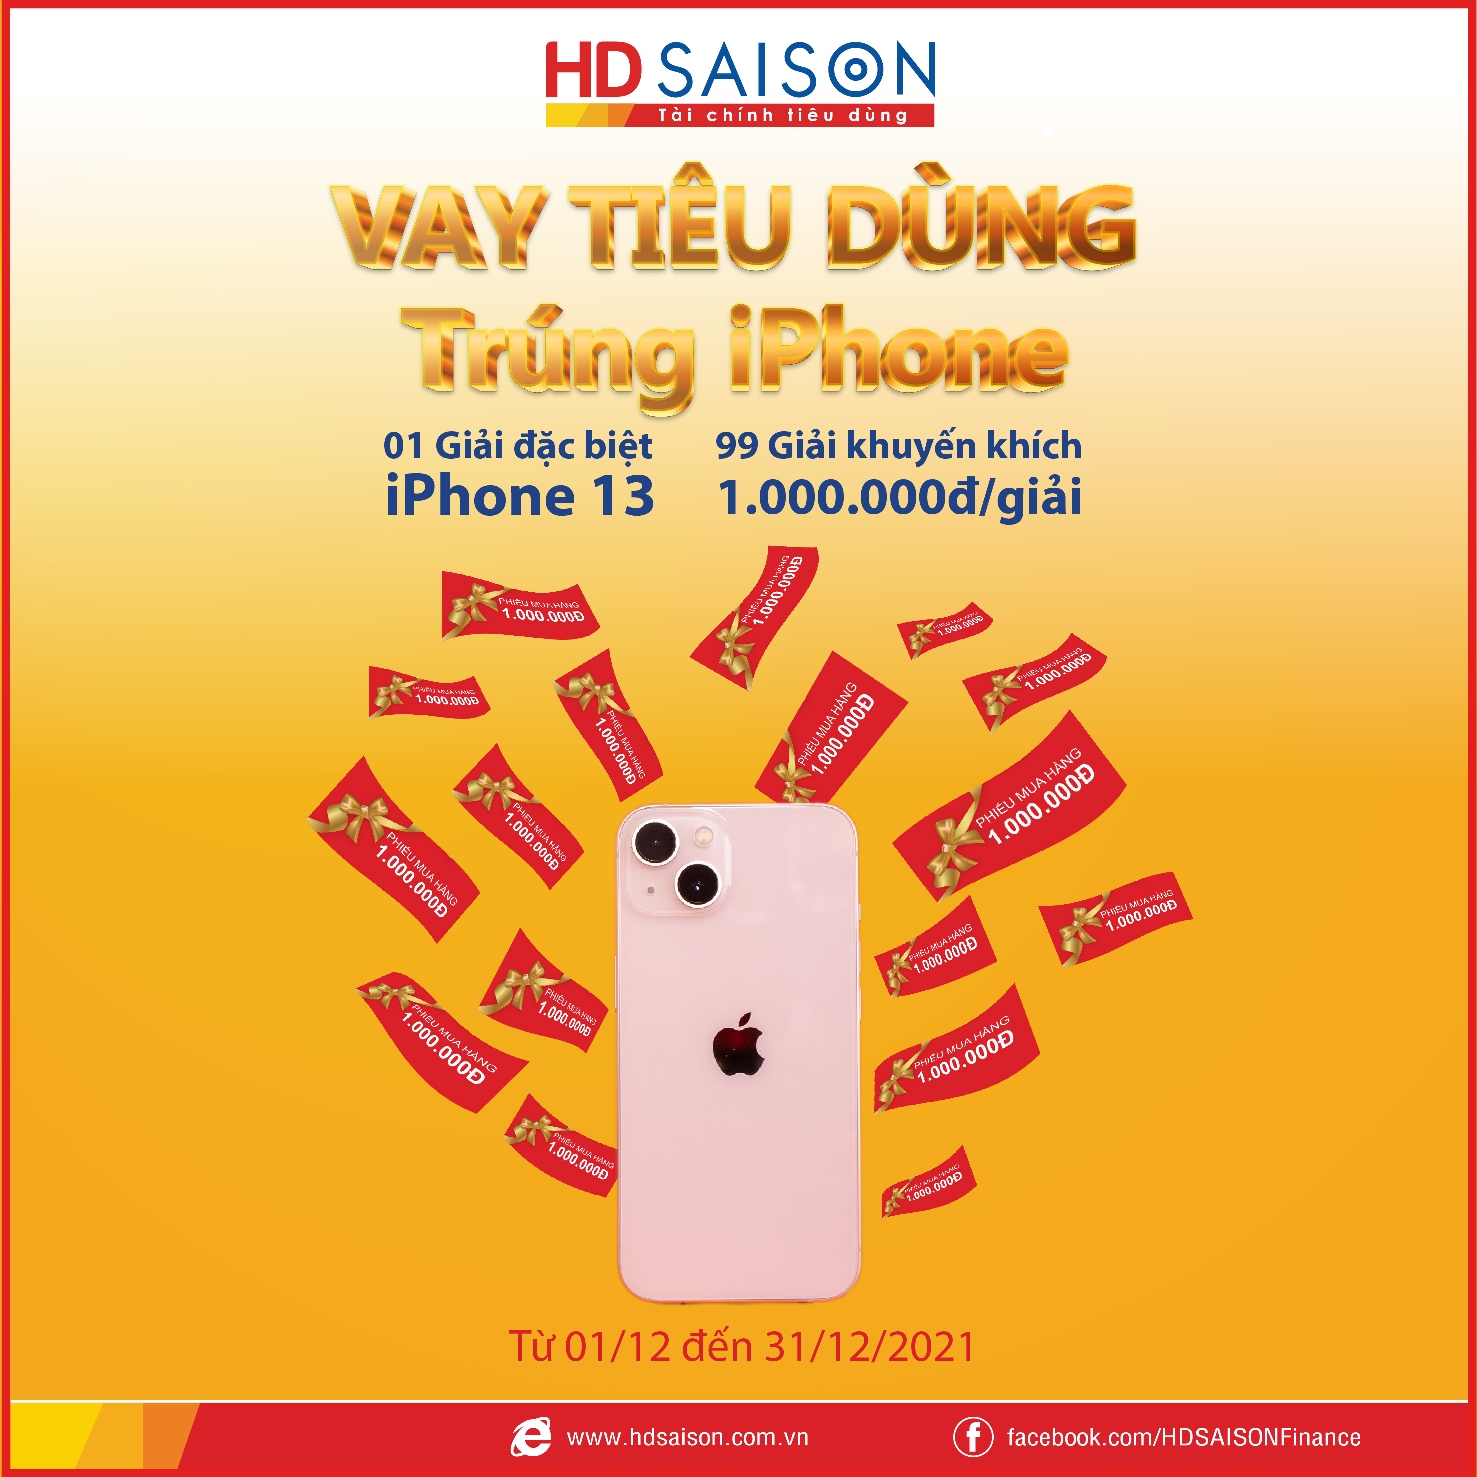 Nhận ngay iPhone 13 khi vay tiêu dùng qua HD SAISON